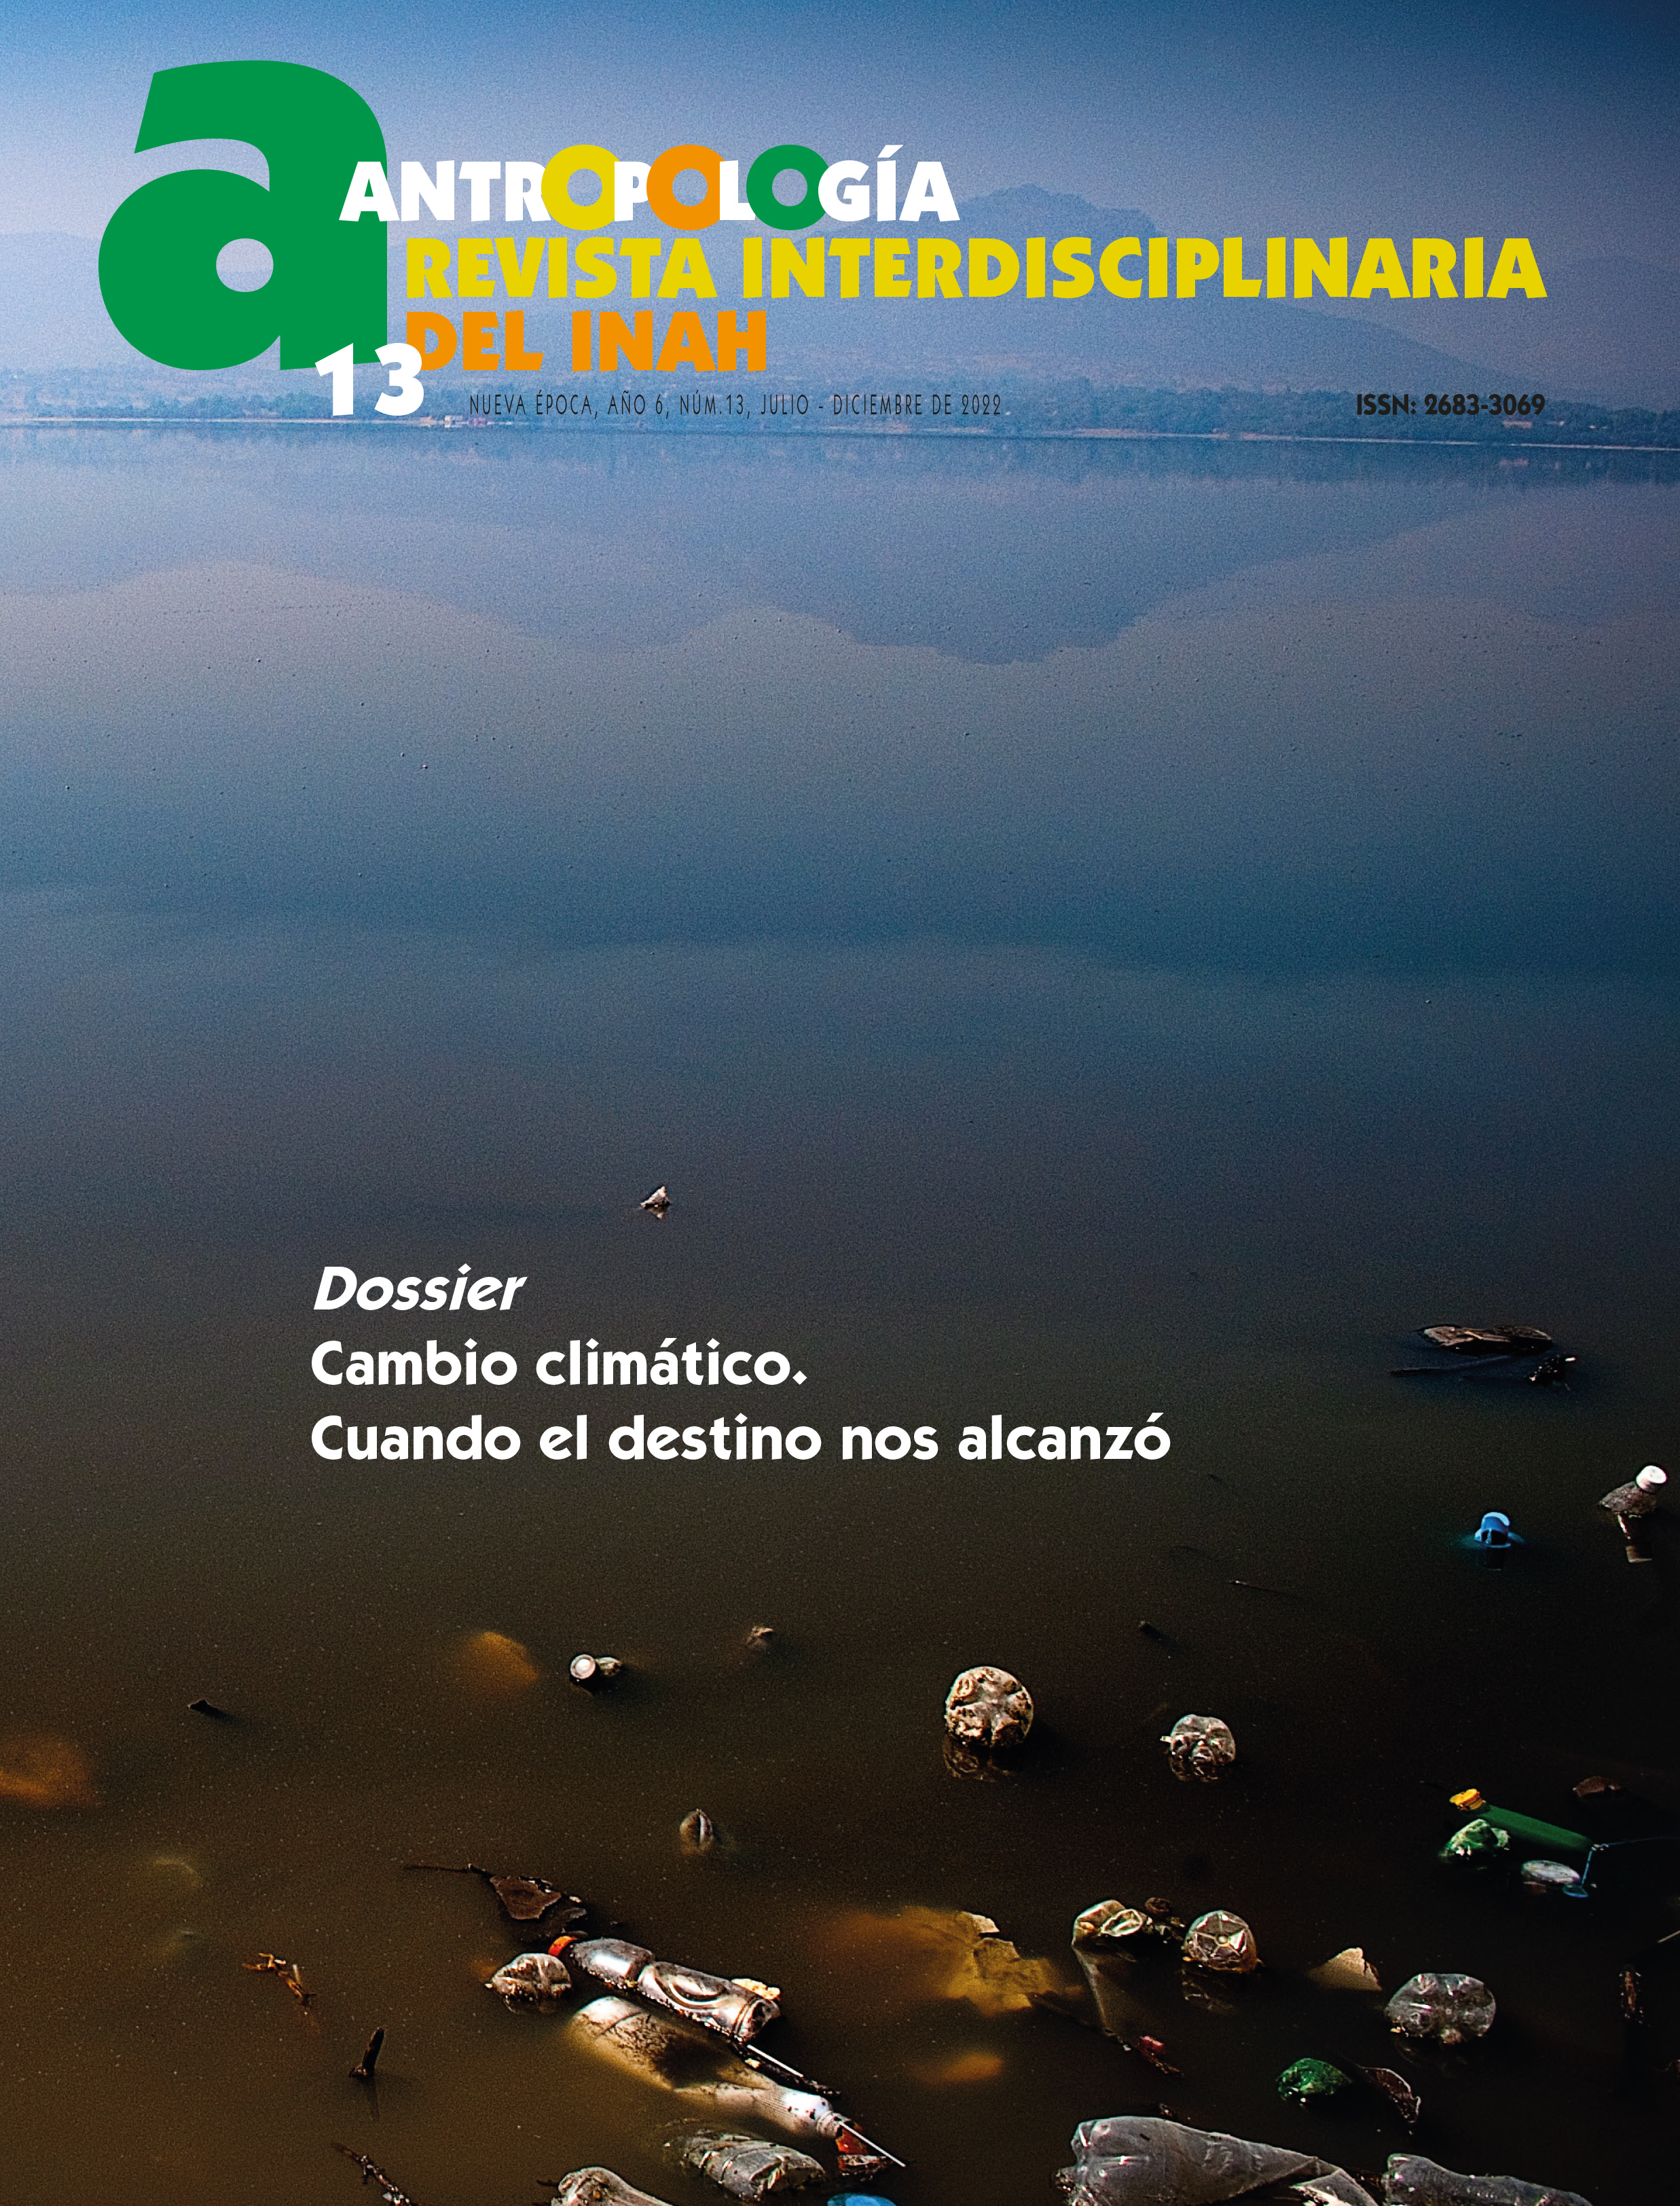 Antropología. Revista Interdisciplinaria del INAH 